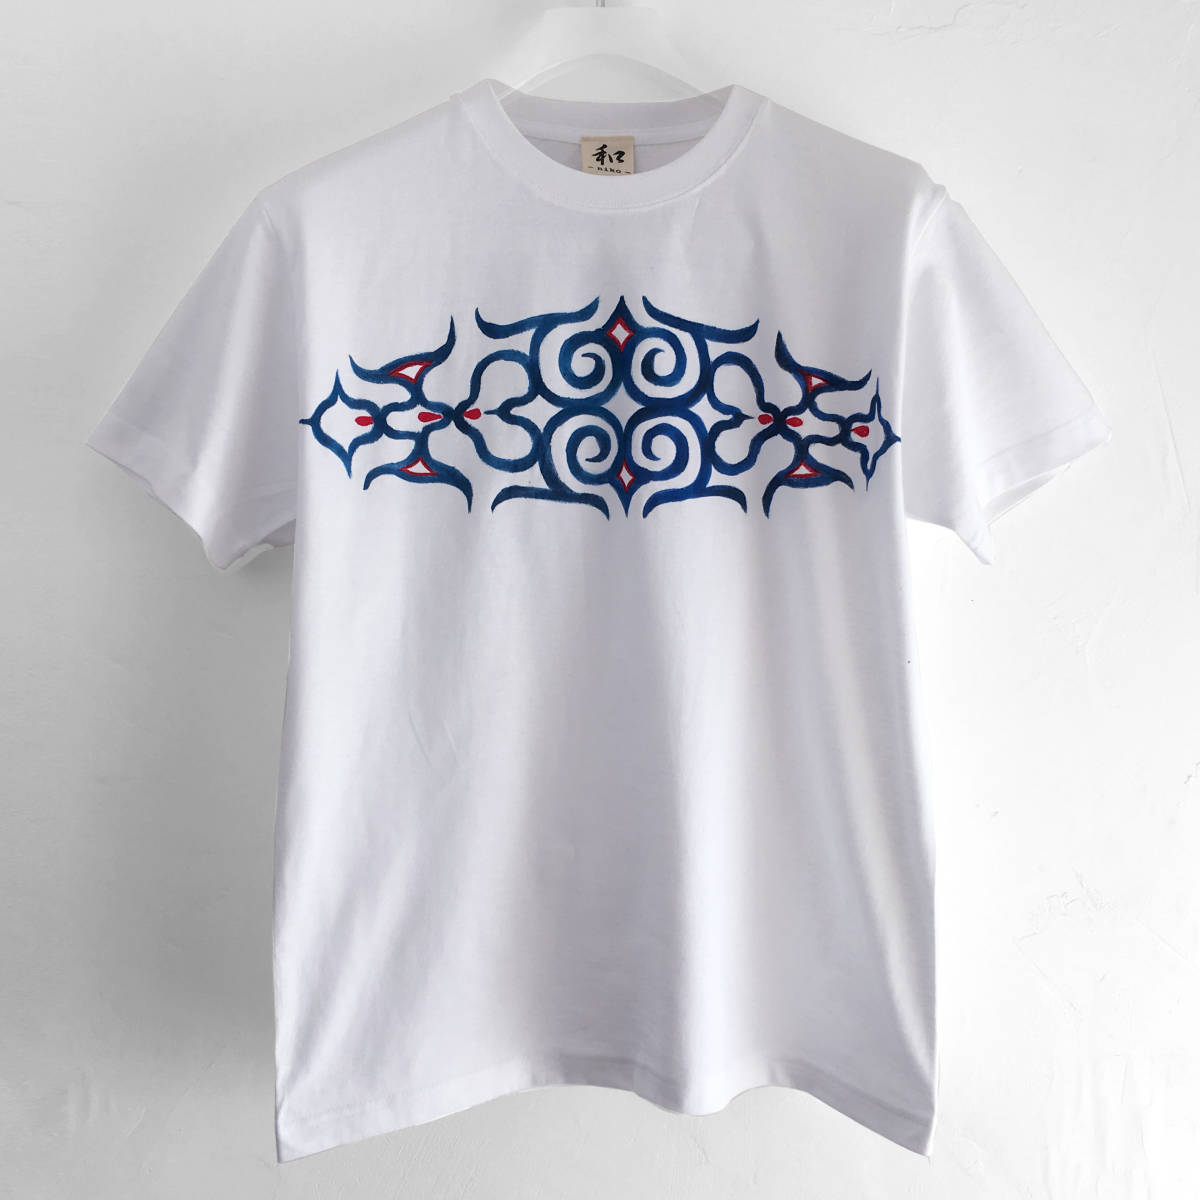 Herren-T-Shirt mit Ainu-Muster, Arabesken- und Eulenmuster, Größe M, Weiß, T-Shirt mit handgezeichnetem Ainu-Muster, Japanisches Muster, Größe M, Rundhals, gemustert